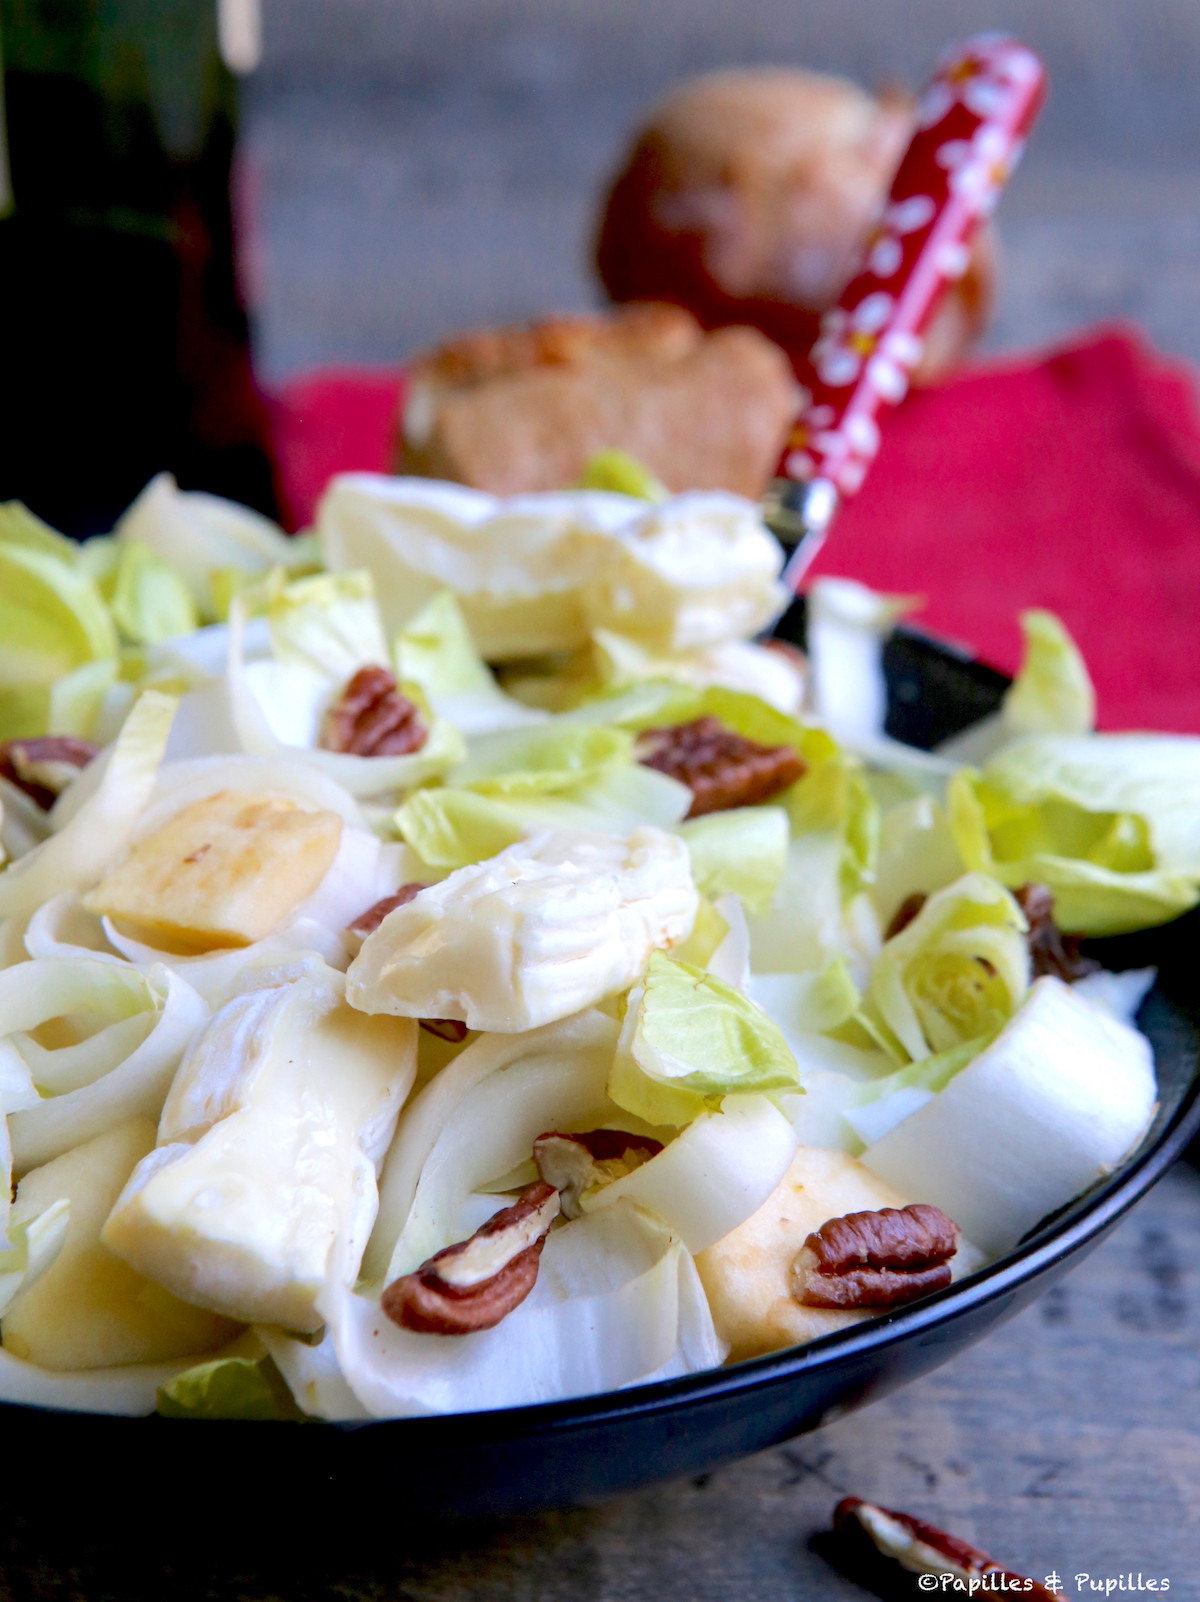 Recette salade d'endives aux noix - Marie Claire